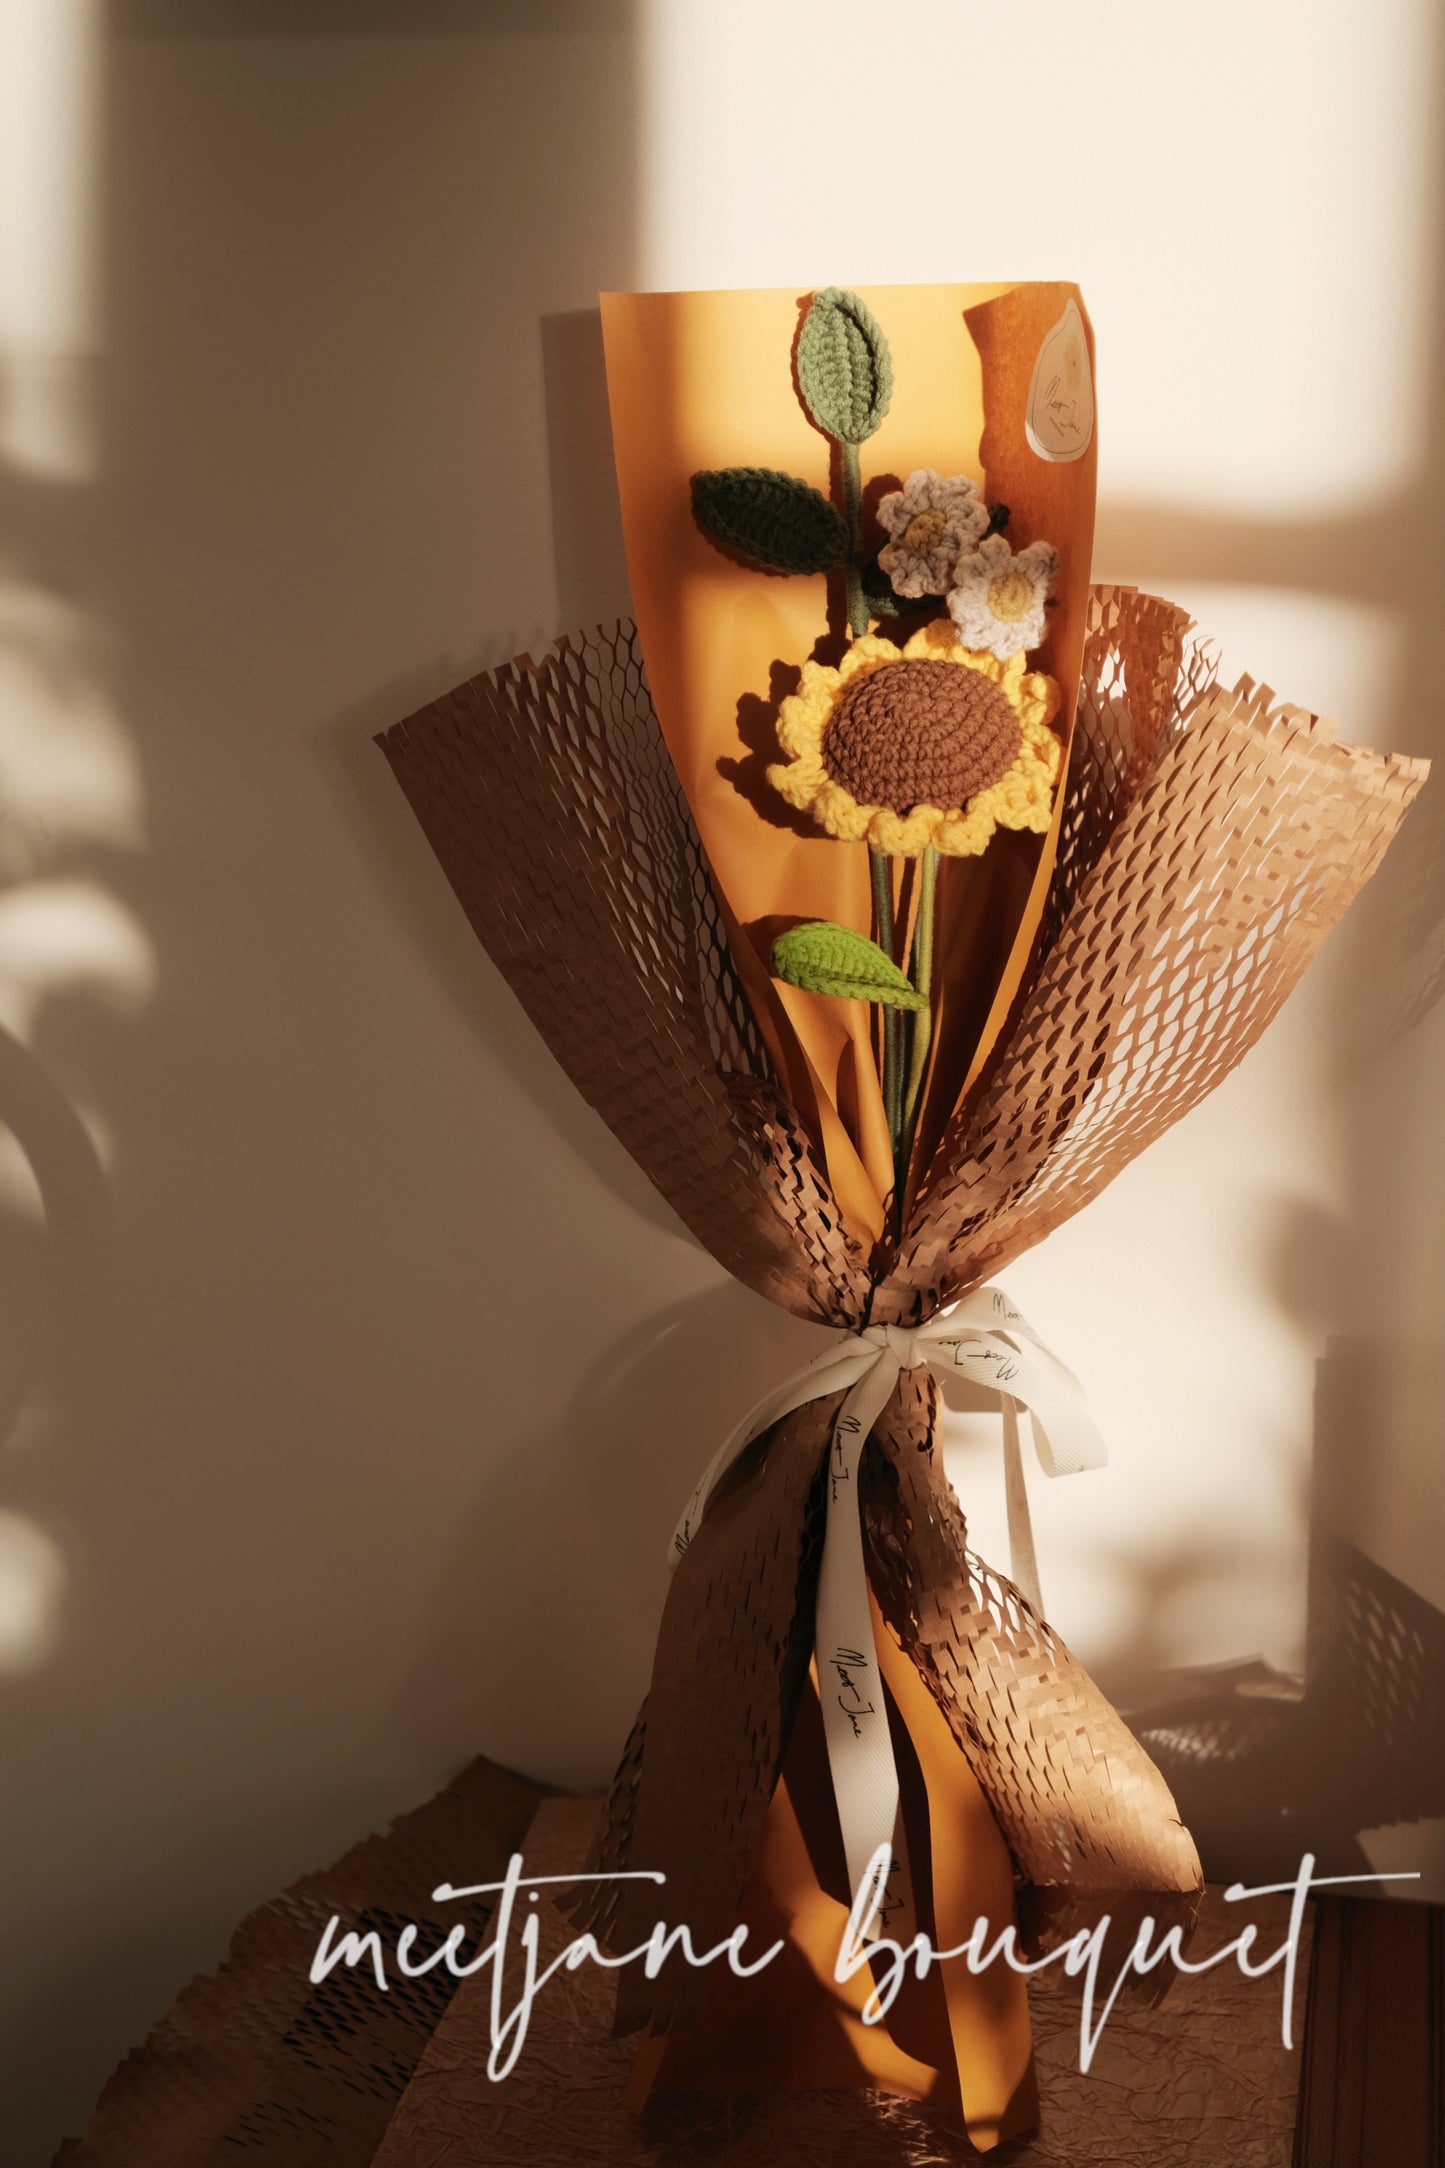 Meetjane Bouquet|Melbourne handmade |Sunset Sunflower bouquet